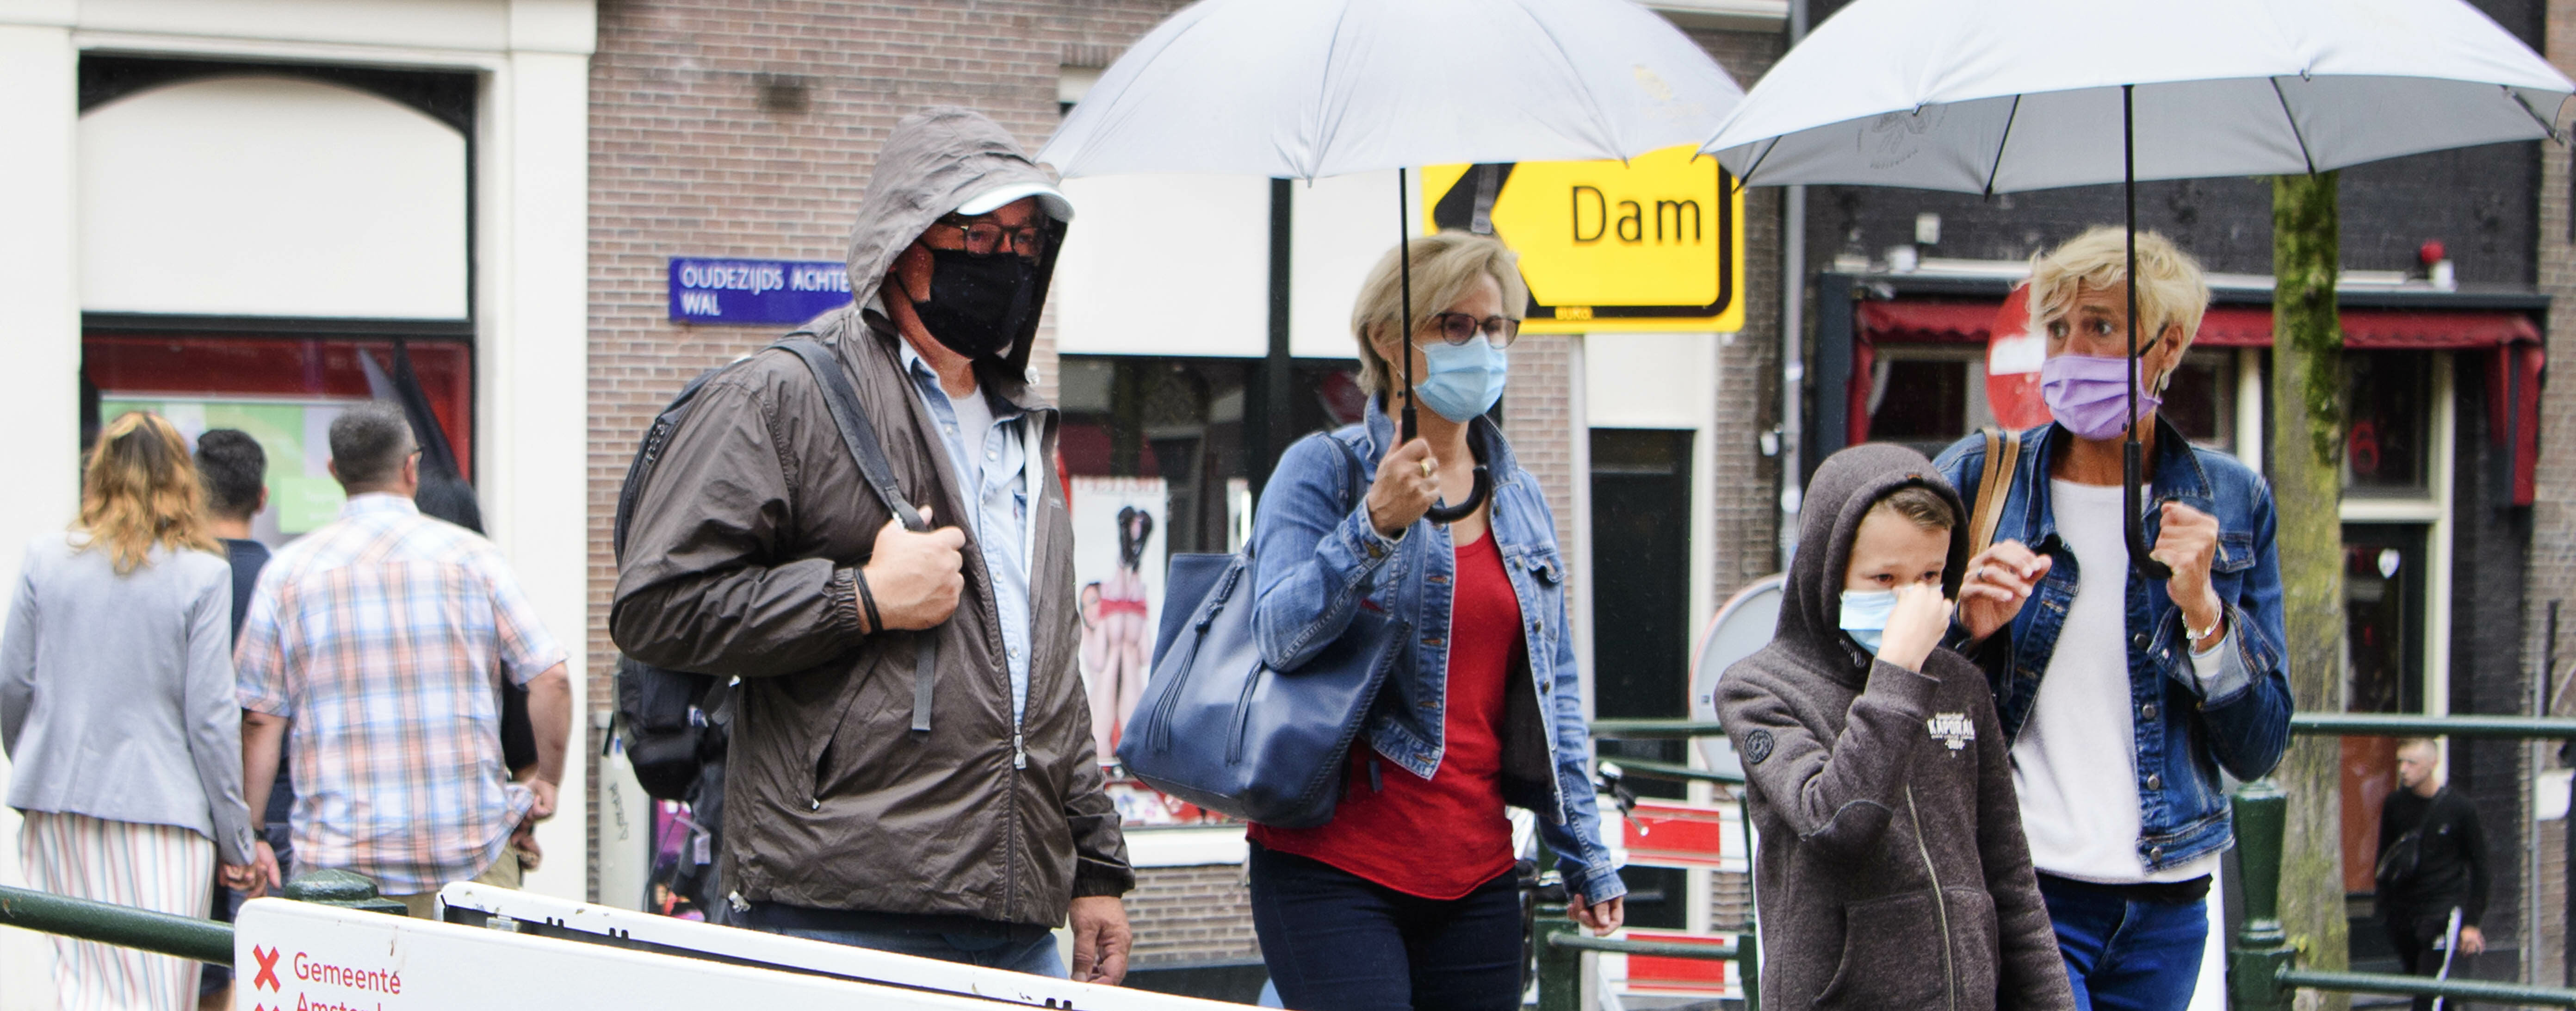 Een foto van toeristen, zaterdag in Amsterdam met paraplu's